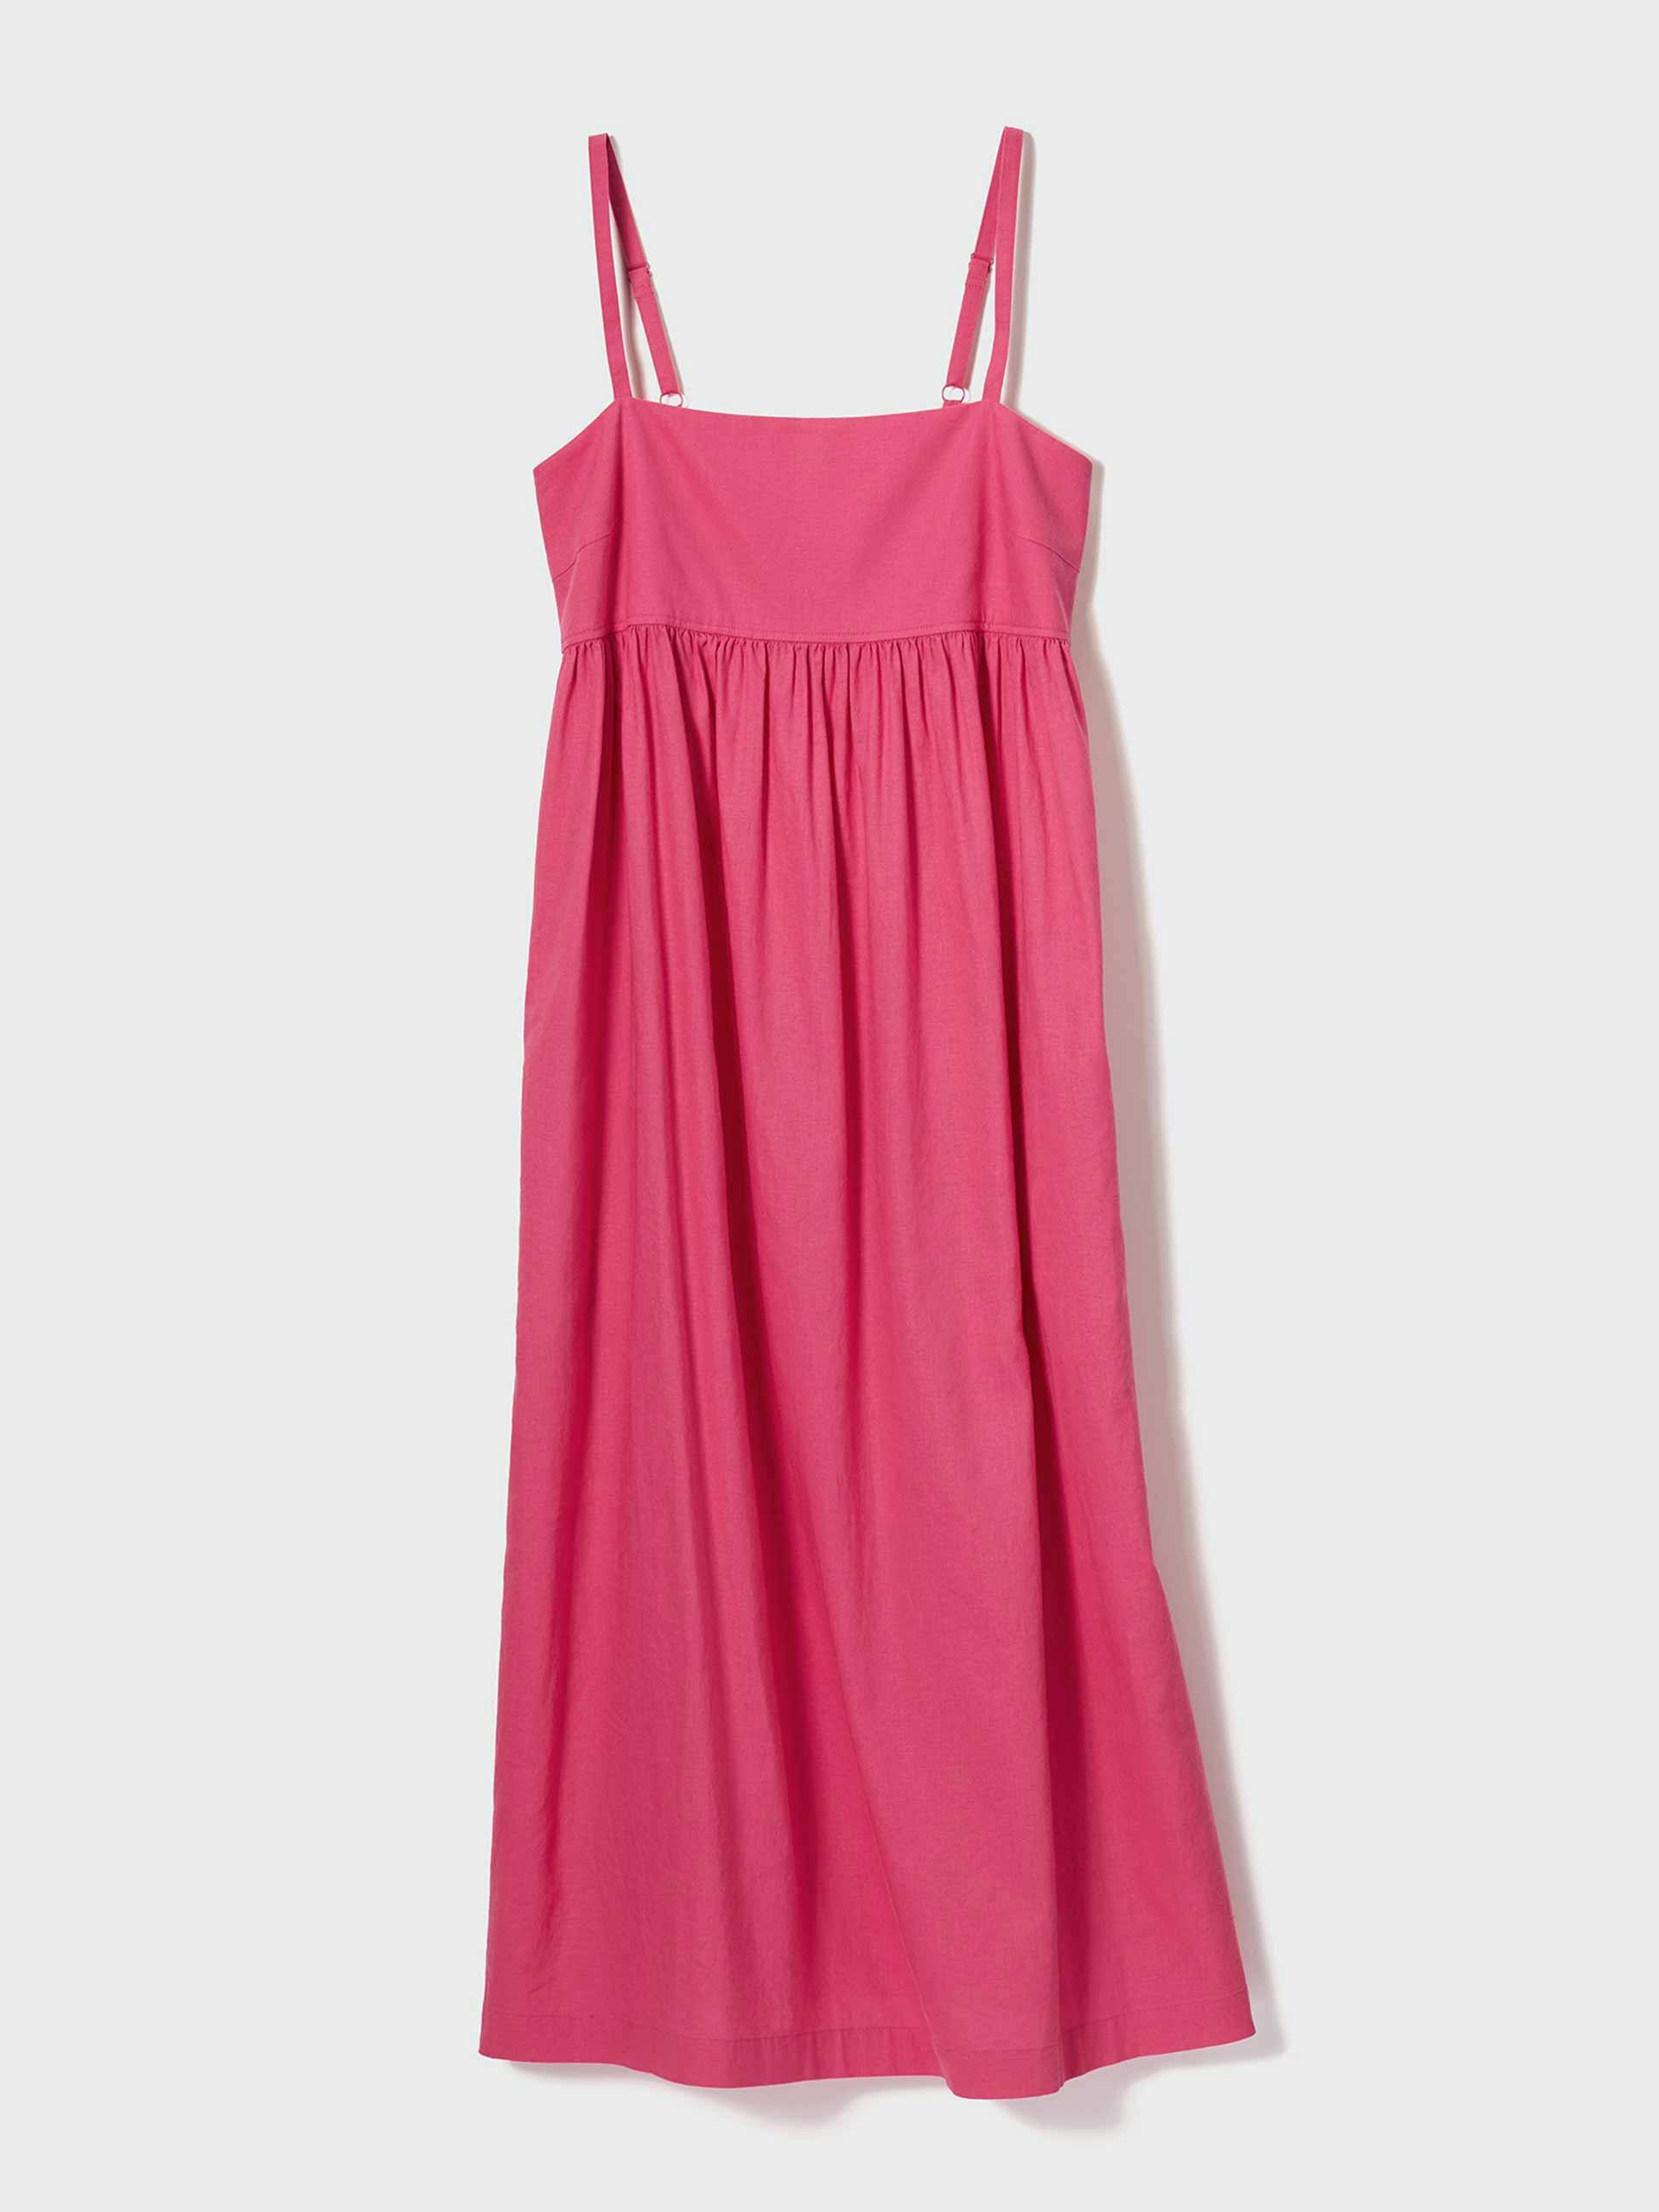 Pink gathered linen blend dress